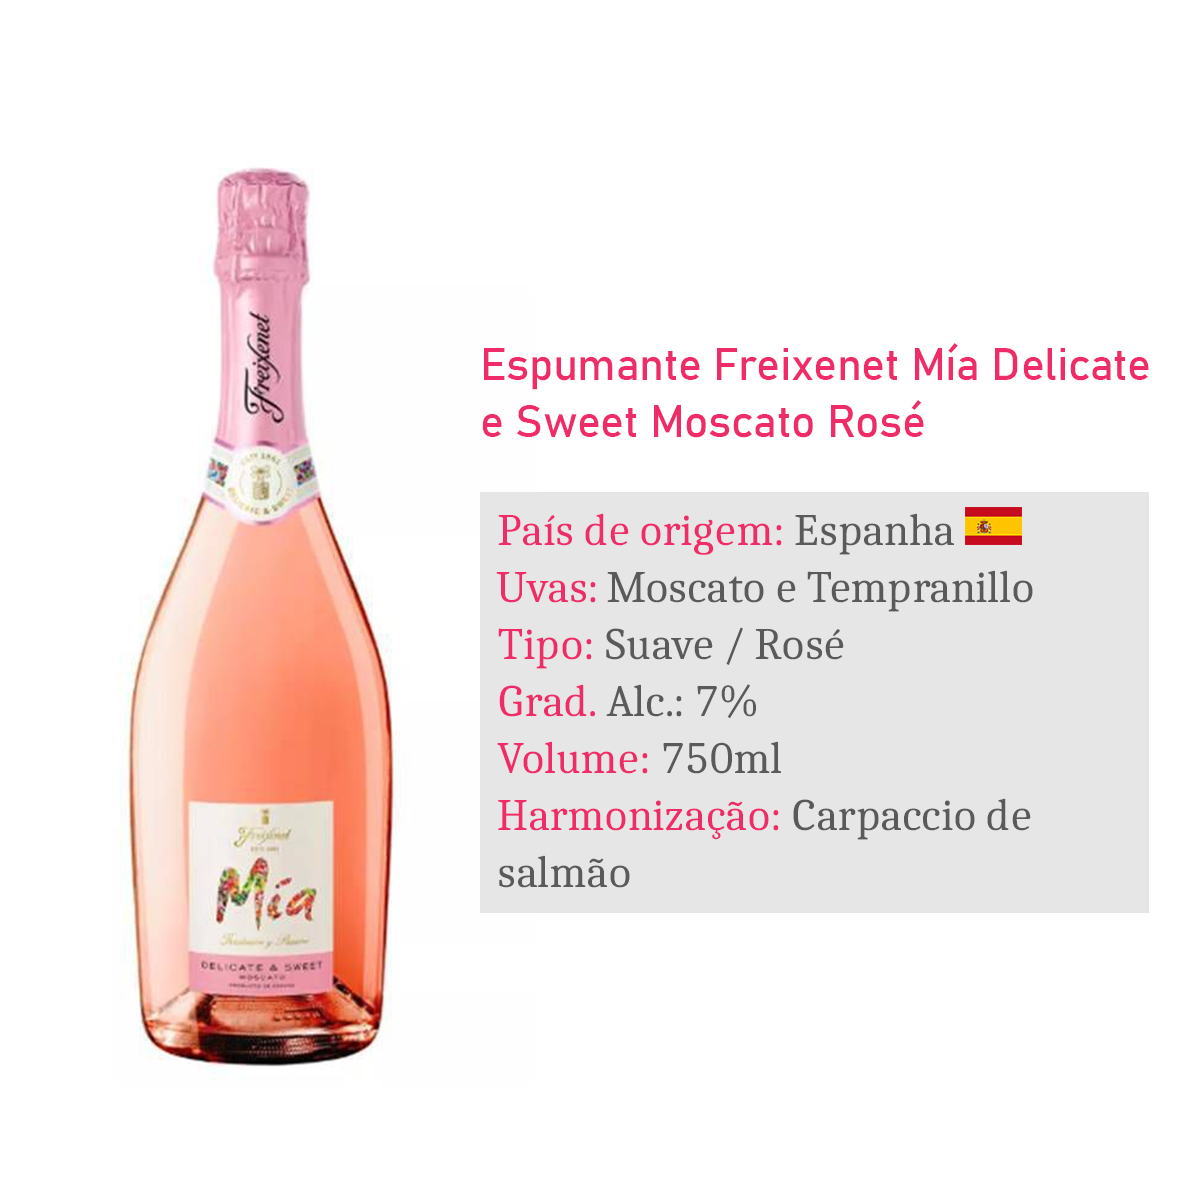 Espumante Freixenet Mia Delicate e Sweet Moscato Rosé 750ml